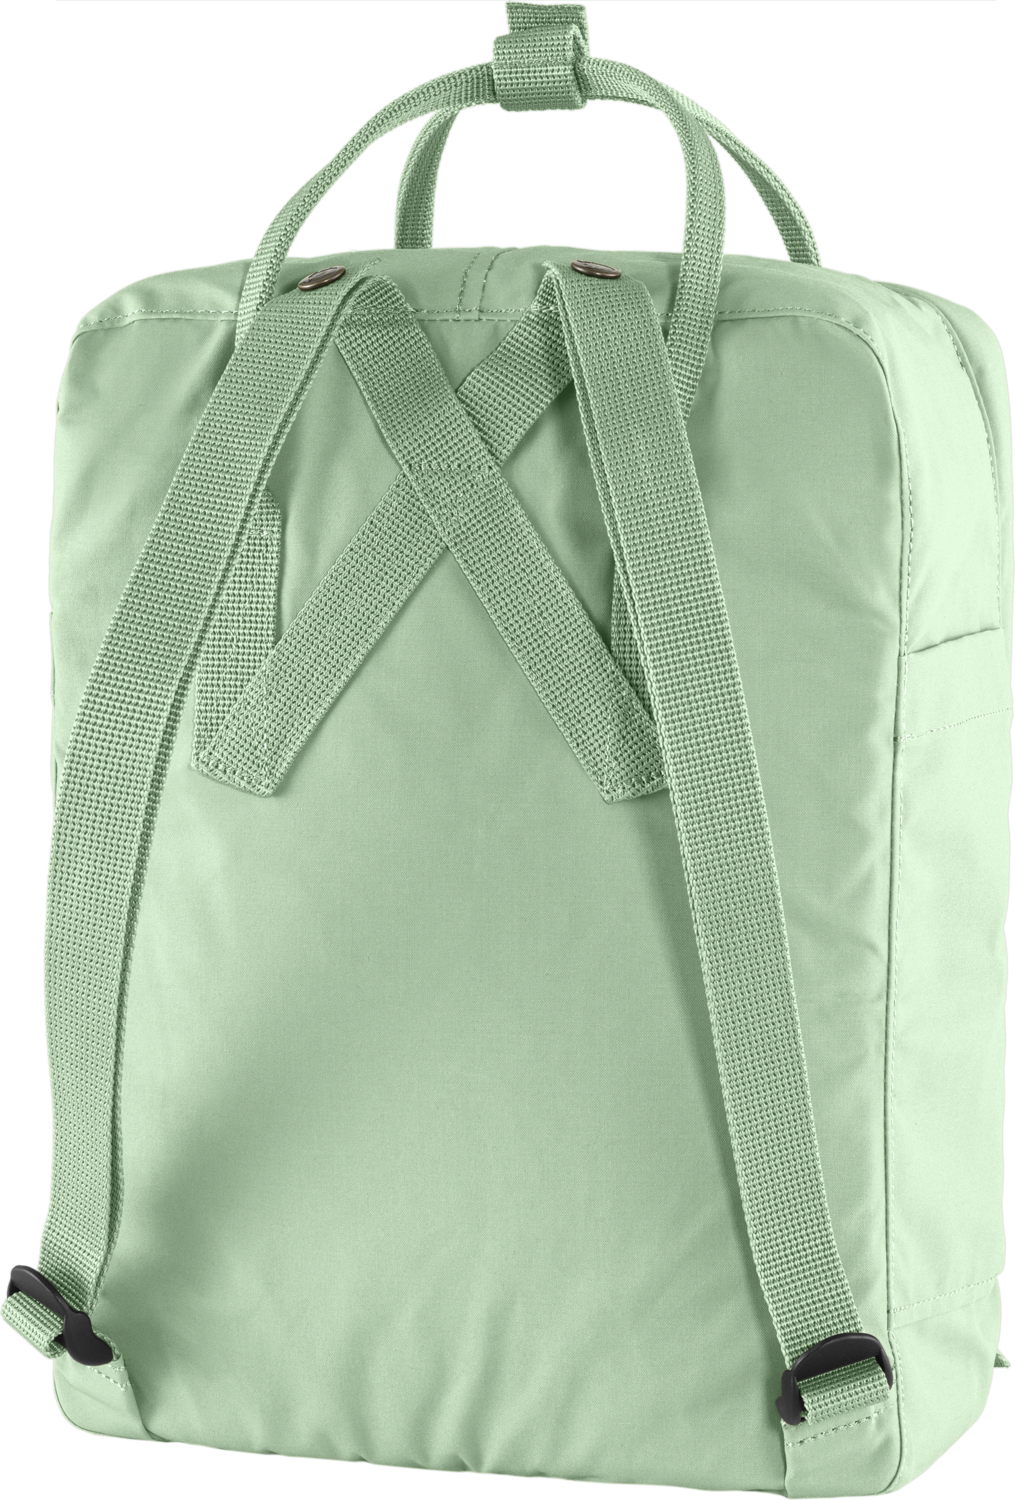 kanken backpack for women